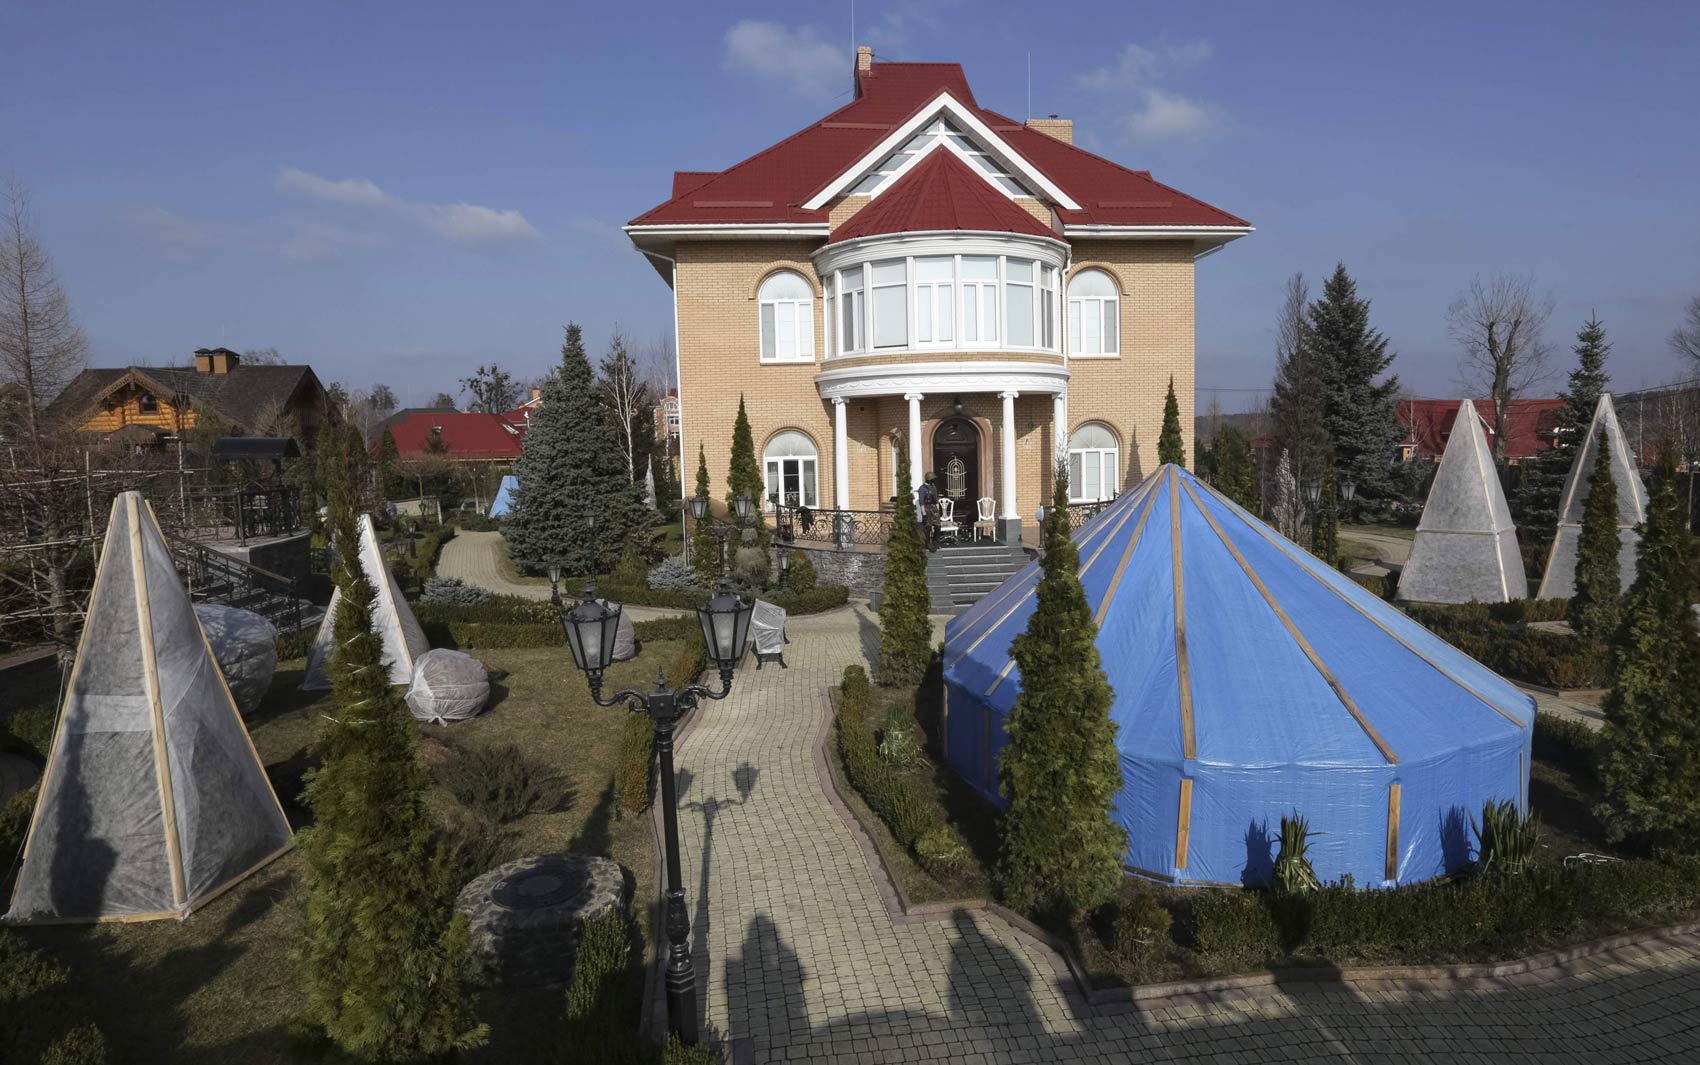 Vista da casa do procurador-geral da Ucrânia, Viktor Pshonka, na vila de Gorenichy, perto de Kiev. O local também foi tomado por manifestantes e aberto para o registro da imprensa